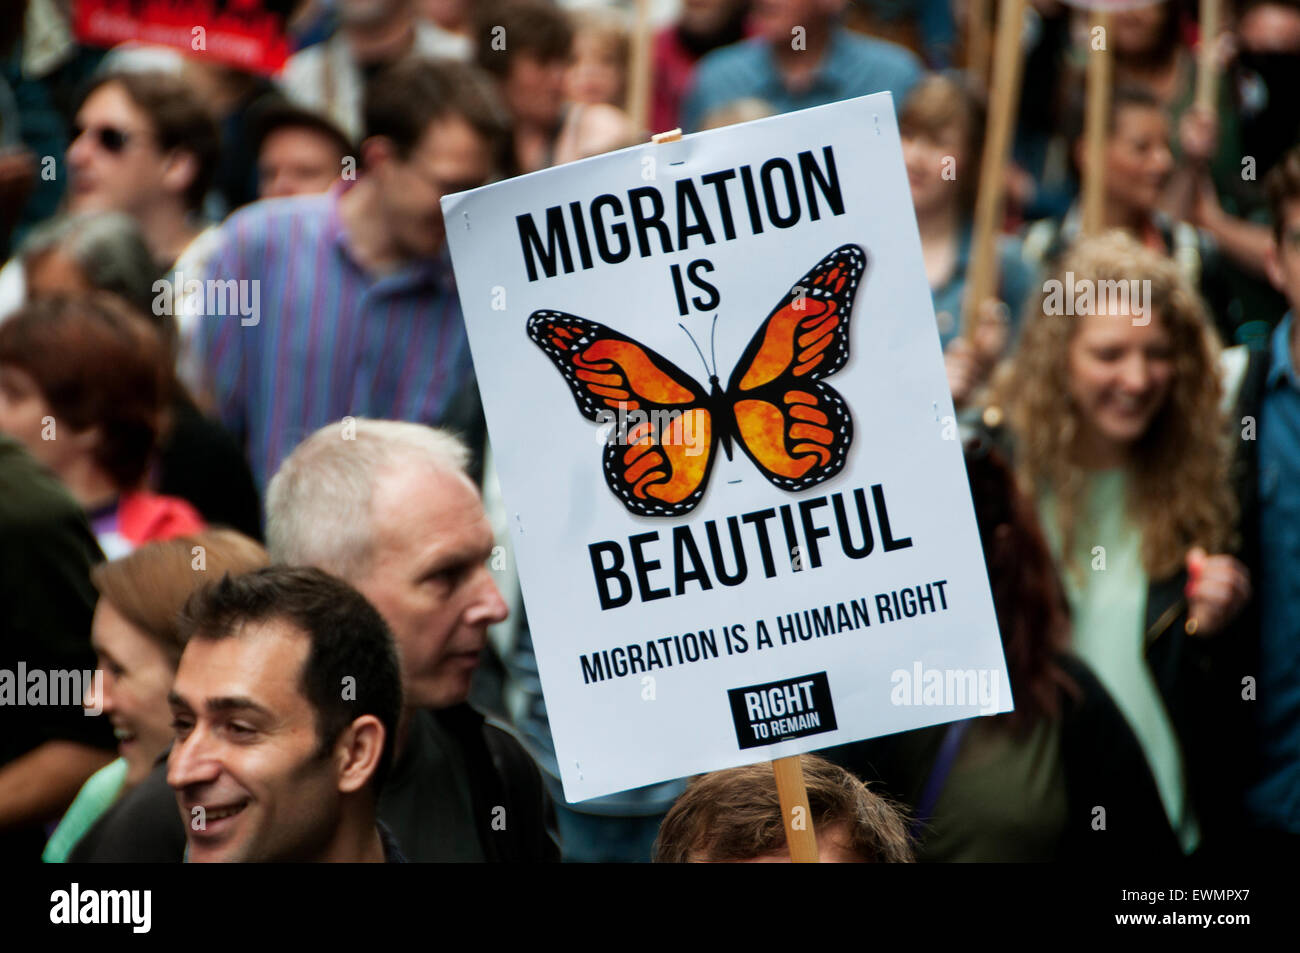 März gegen den Sparkurs, London 20. Juni 2015. Ein Demonstrant hält ein Plakat "Migration ist schön" sagen. Stockfoto